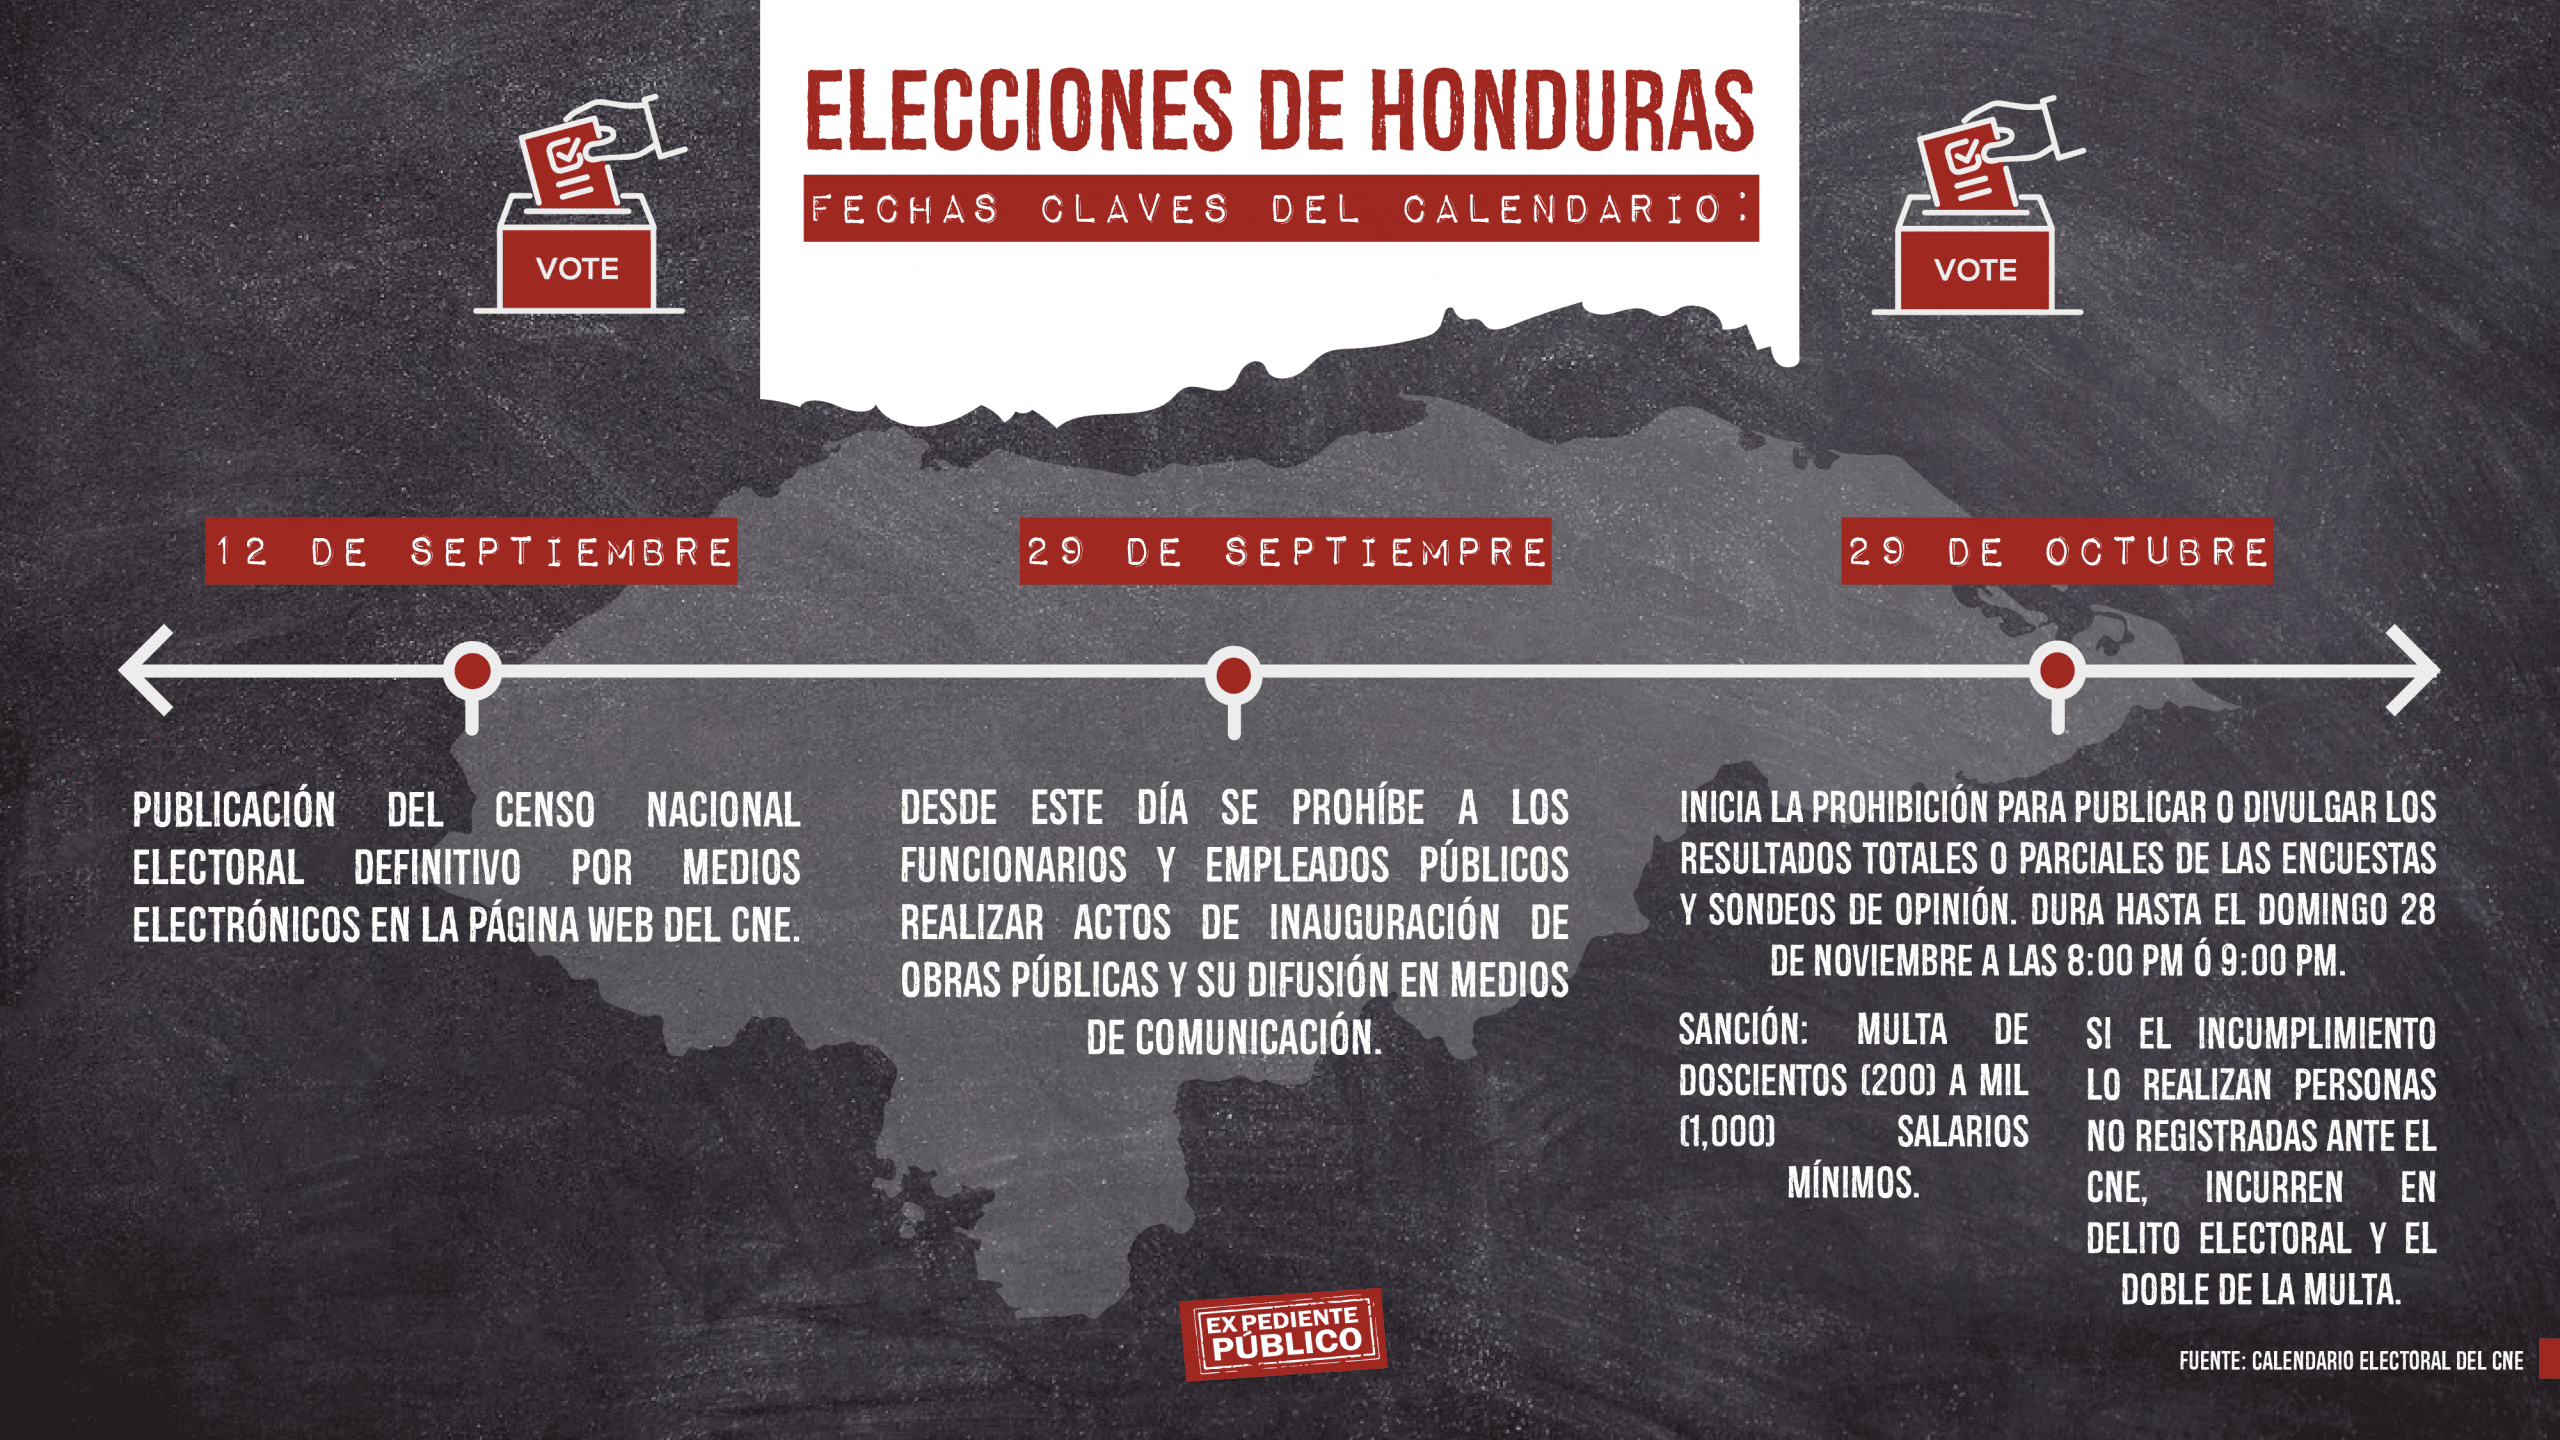 Bloqueo Al Presupuesto Para órgano Electoral Ensombrece Proceso De Elecciones En Honduras 2256